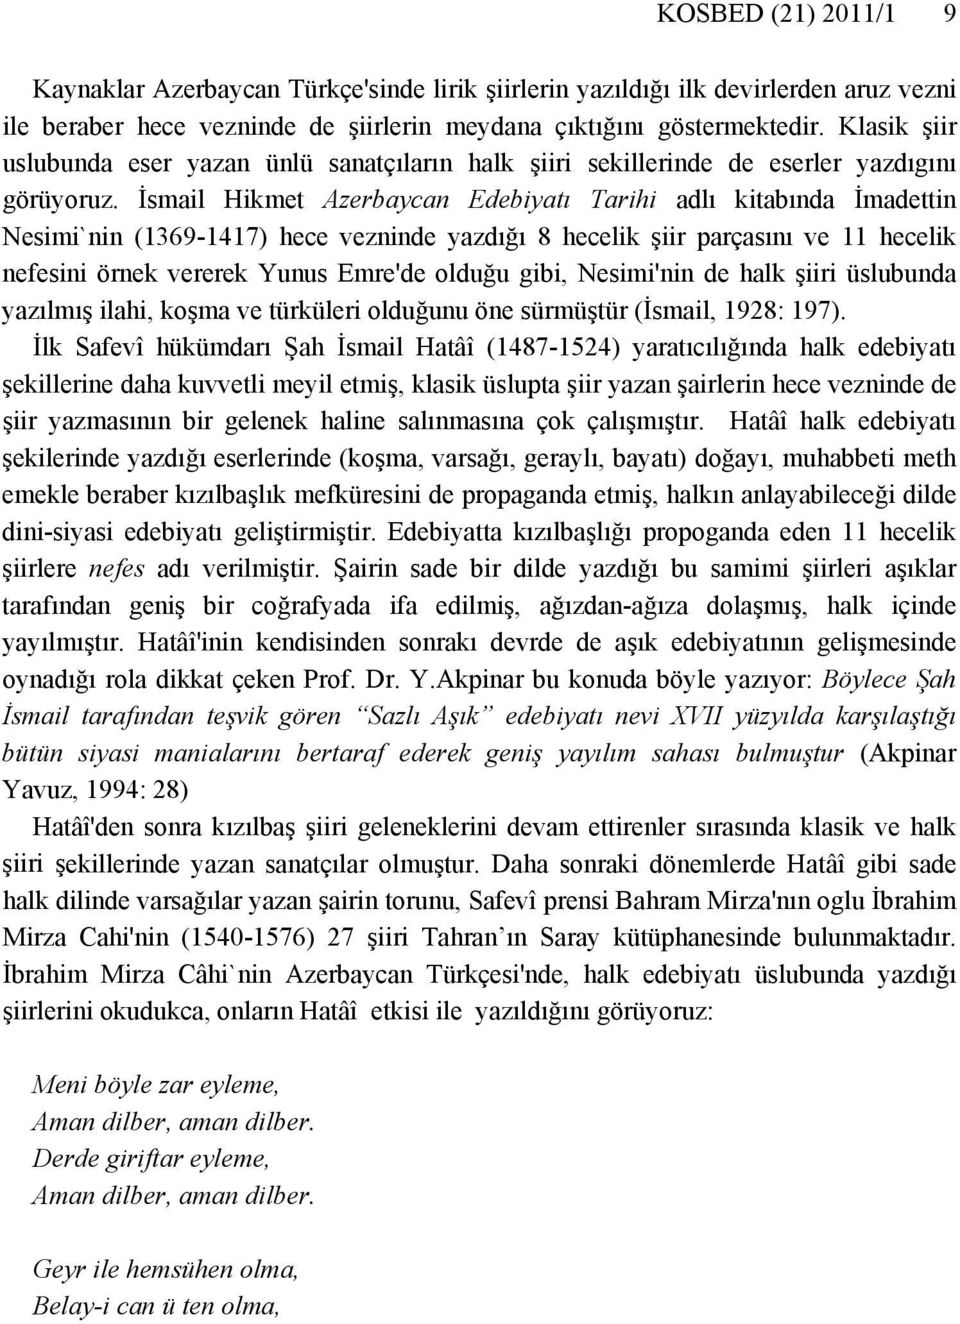 İsmail Hikmet Azerbaycan Edebiyatı Tarihi adlı kitabında İmadettin Nesimi`nin (1369-1417) hece vezninde yazdığı 8 hecelik şiir parçasını ve 11 hecelik nefesini örnek vererek Yunus Emre'de olduğu